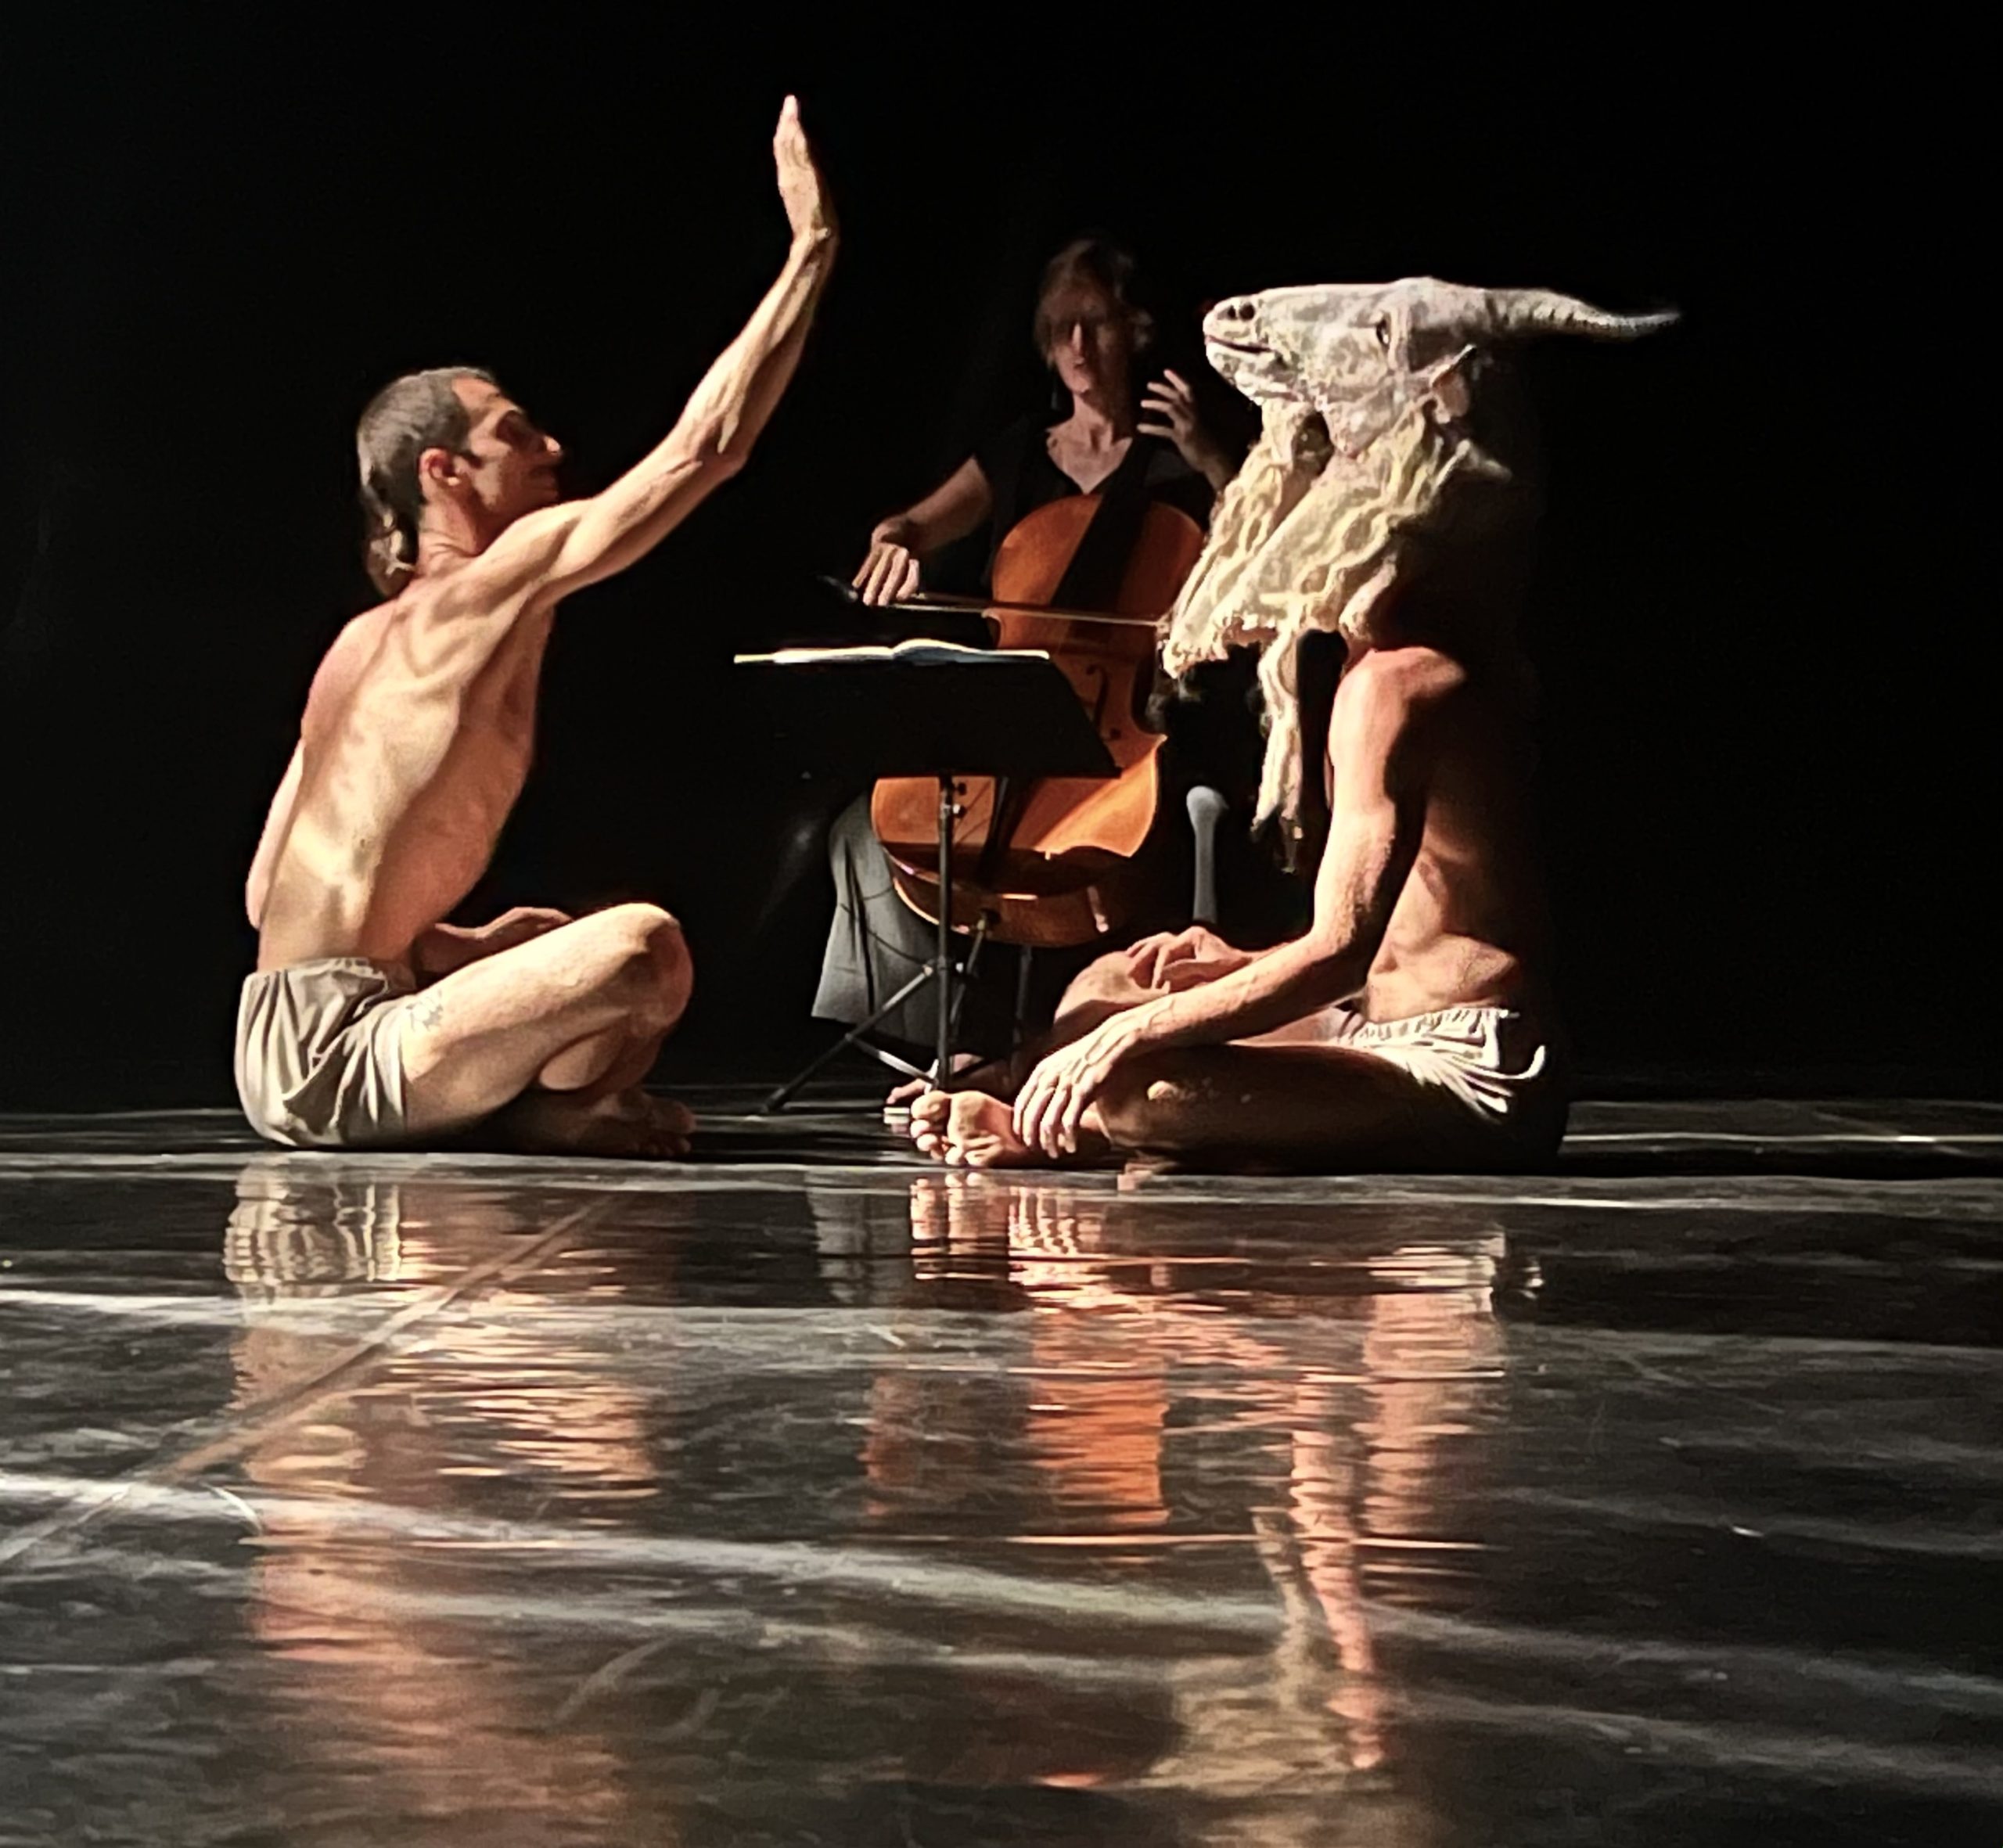 https://www.danzaurbana.eu/festival/wp-content/uploads/SATIRI_foto_Virgilio-Sieni_2-scaled.jpg